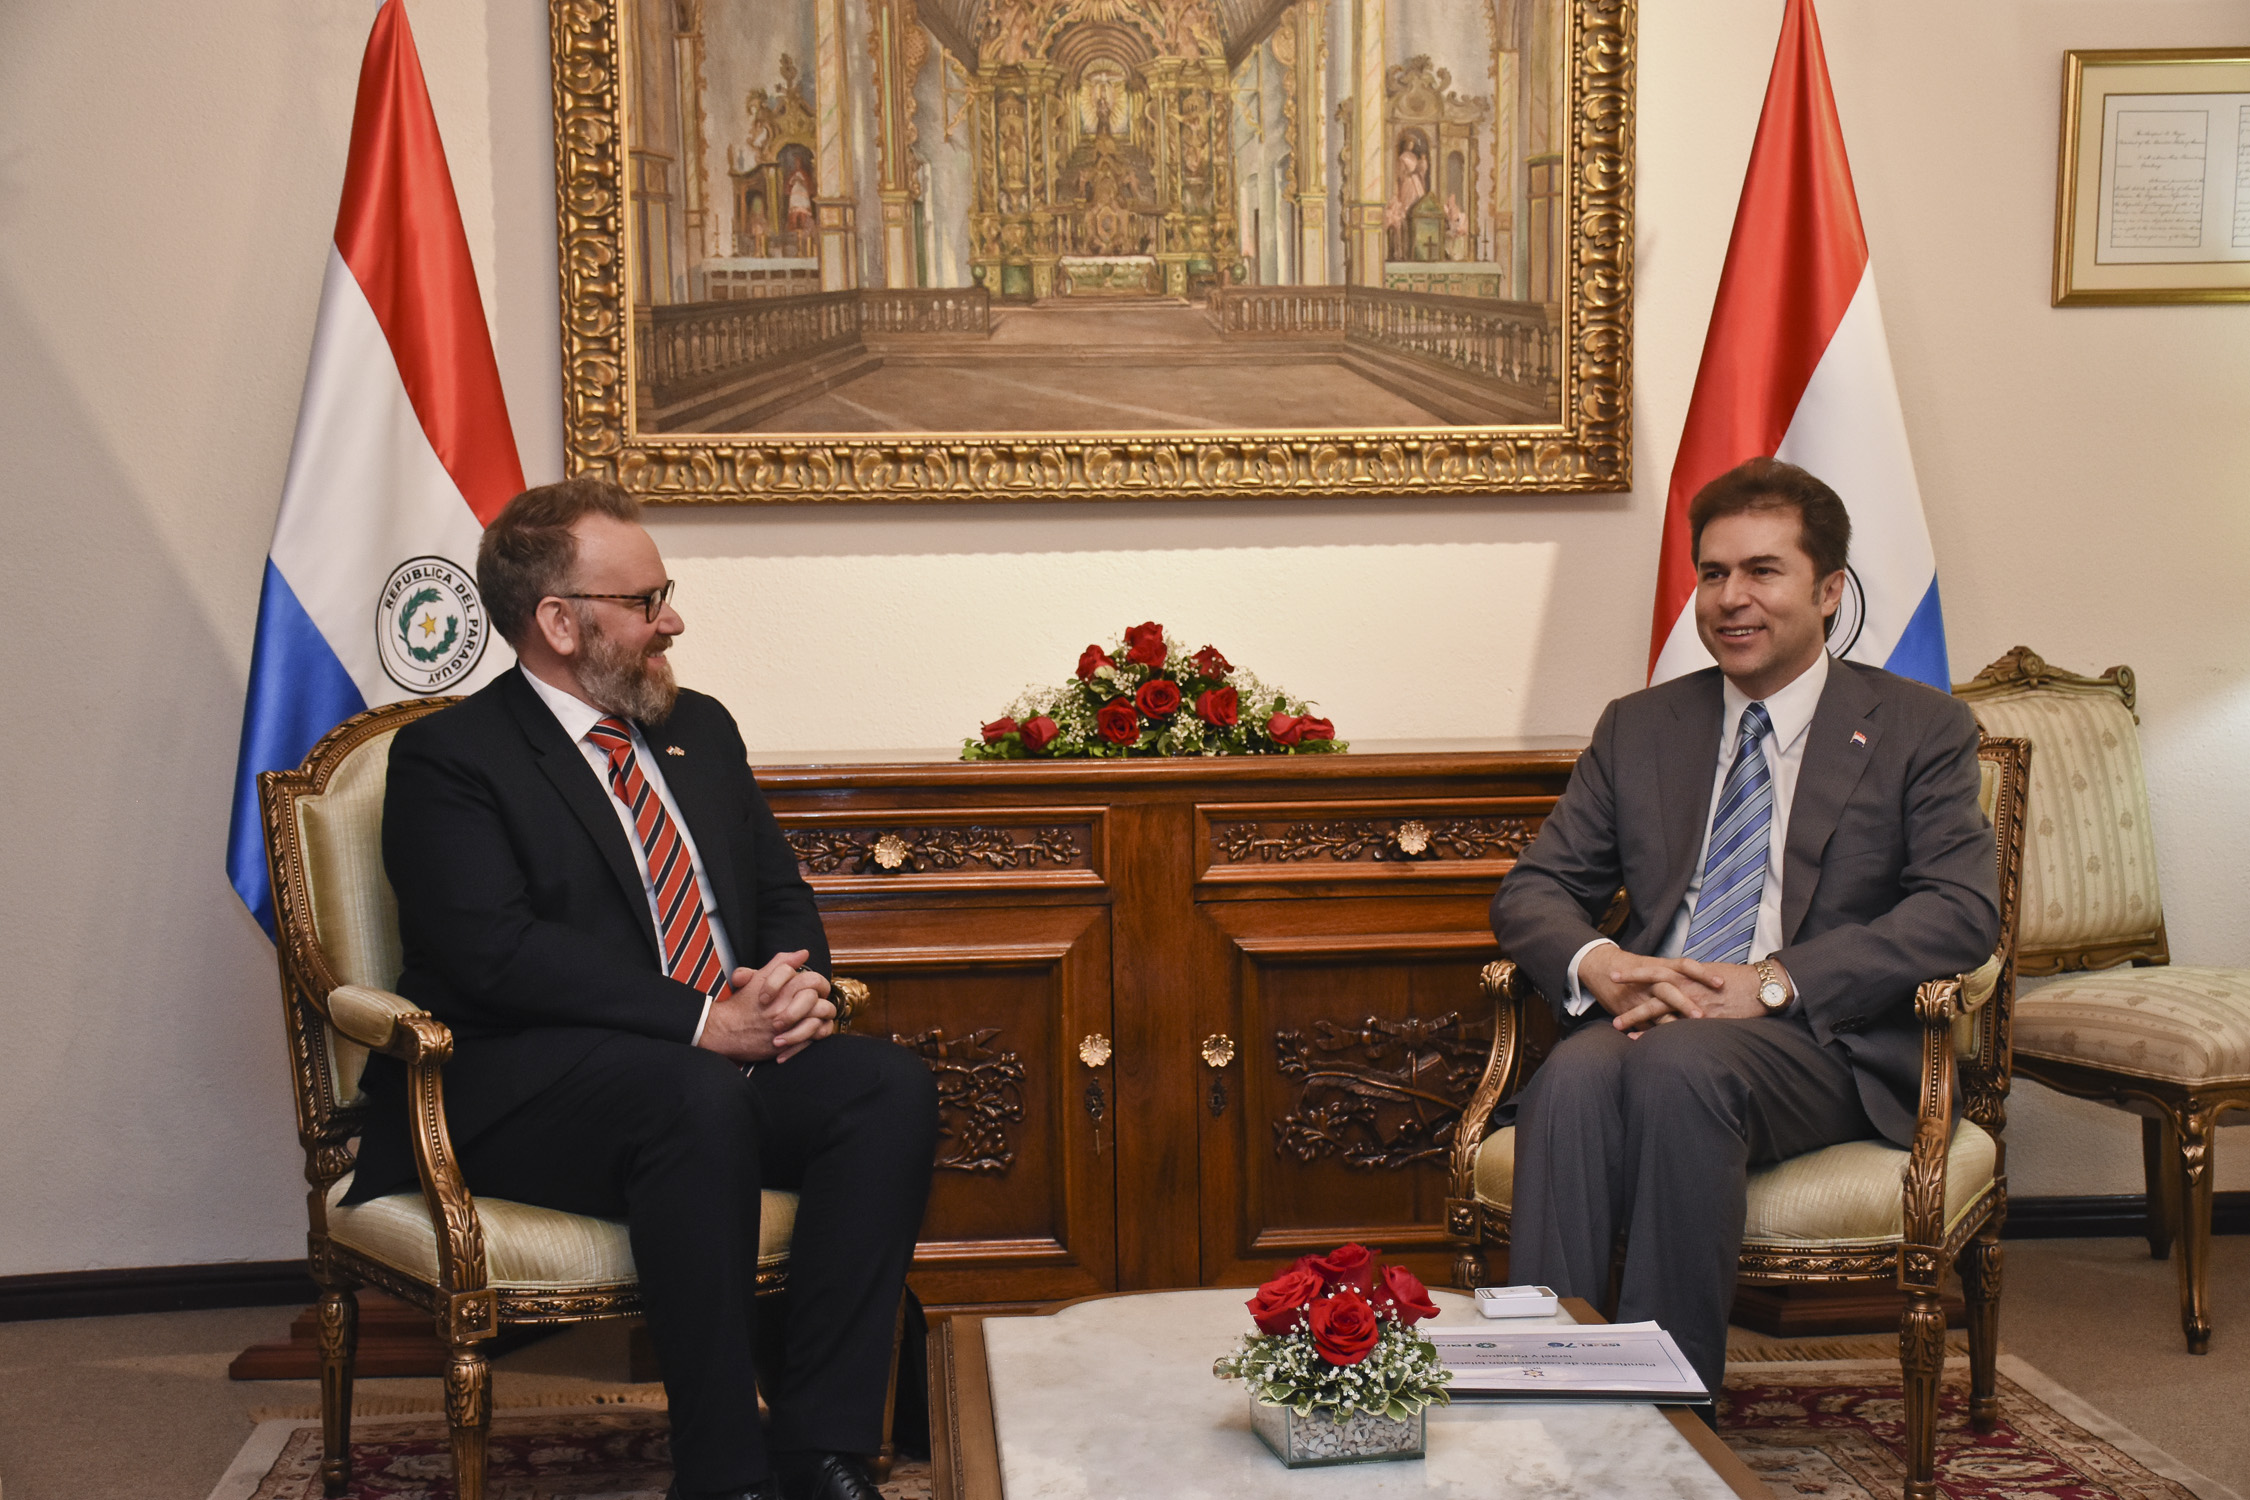 Gran Bretaña brinda su apoyo y felicita al Paraguay por decisión apegada al derecho internacional